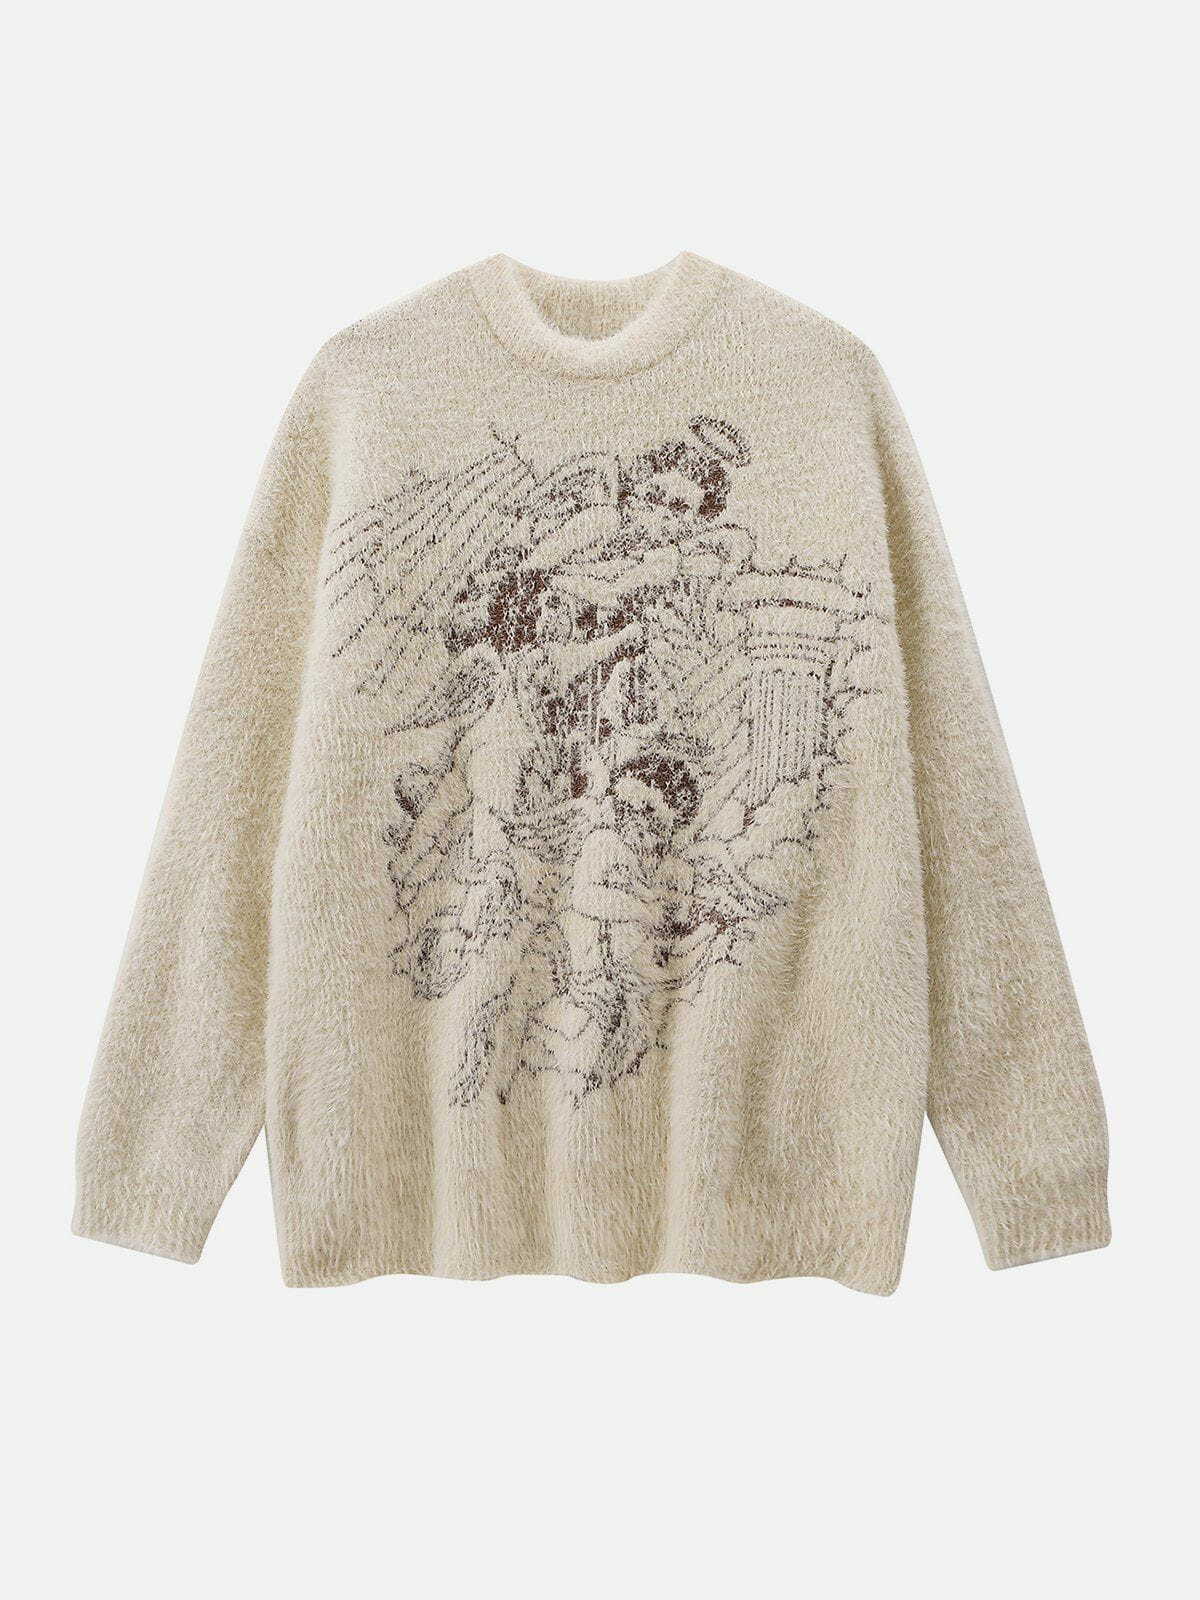 revolutionary angel graphic sweater y2k fashion statement 3105